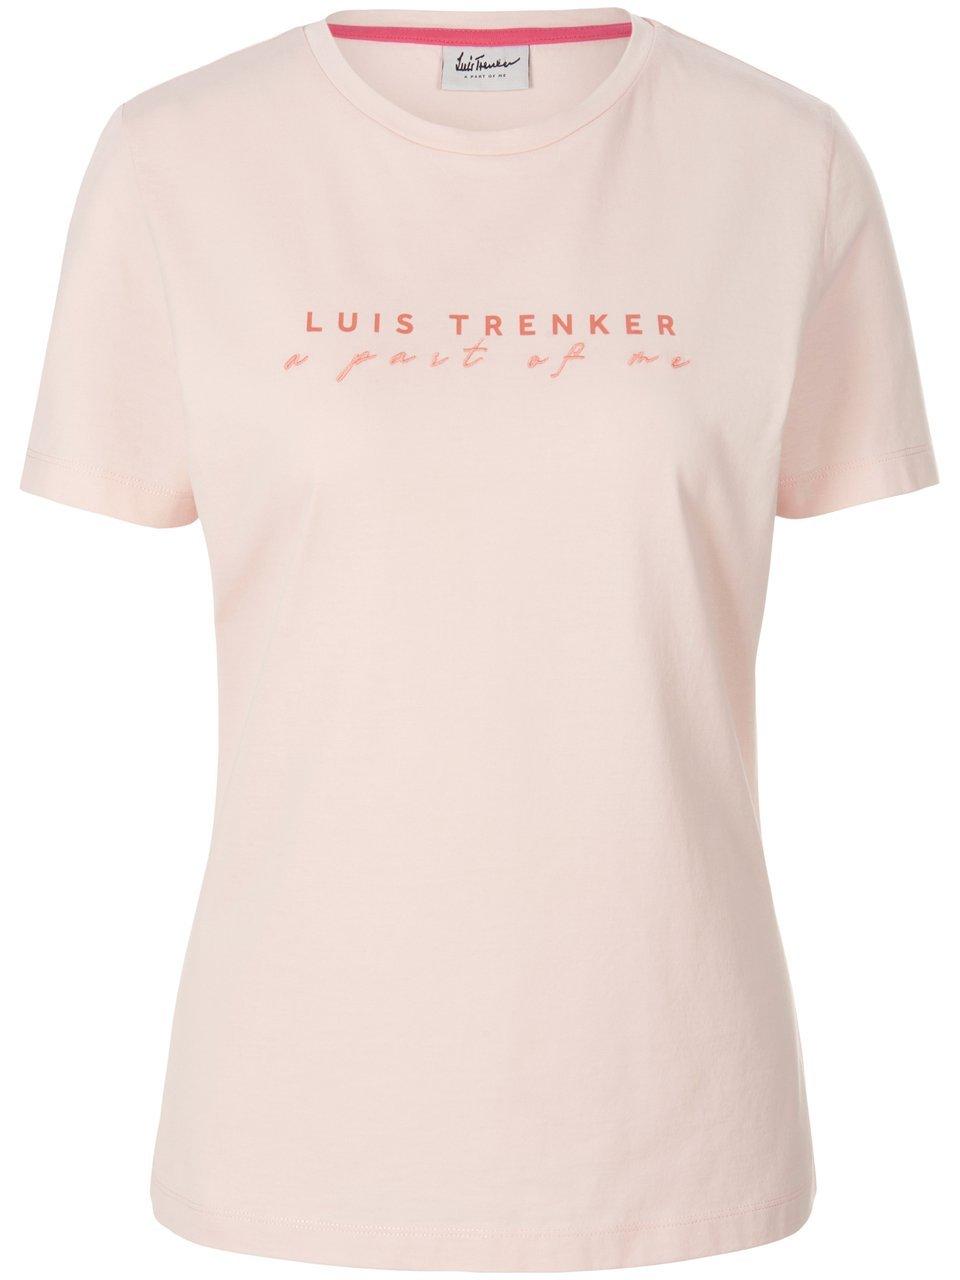 T-shirt Van Luis Trenker roze